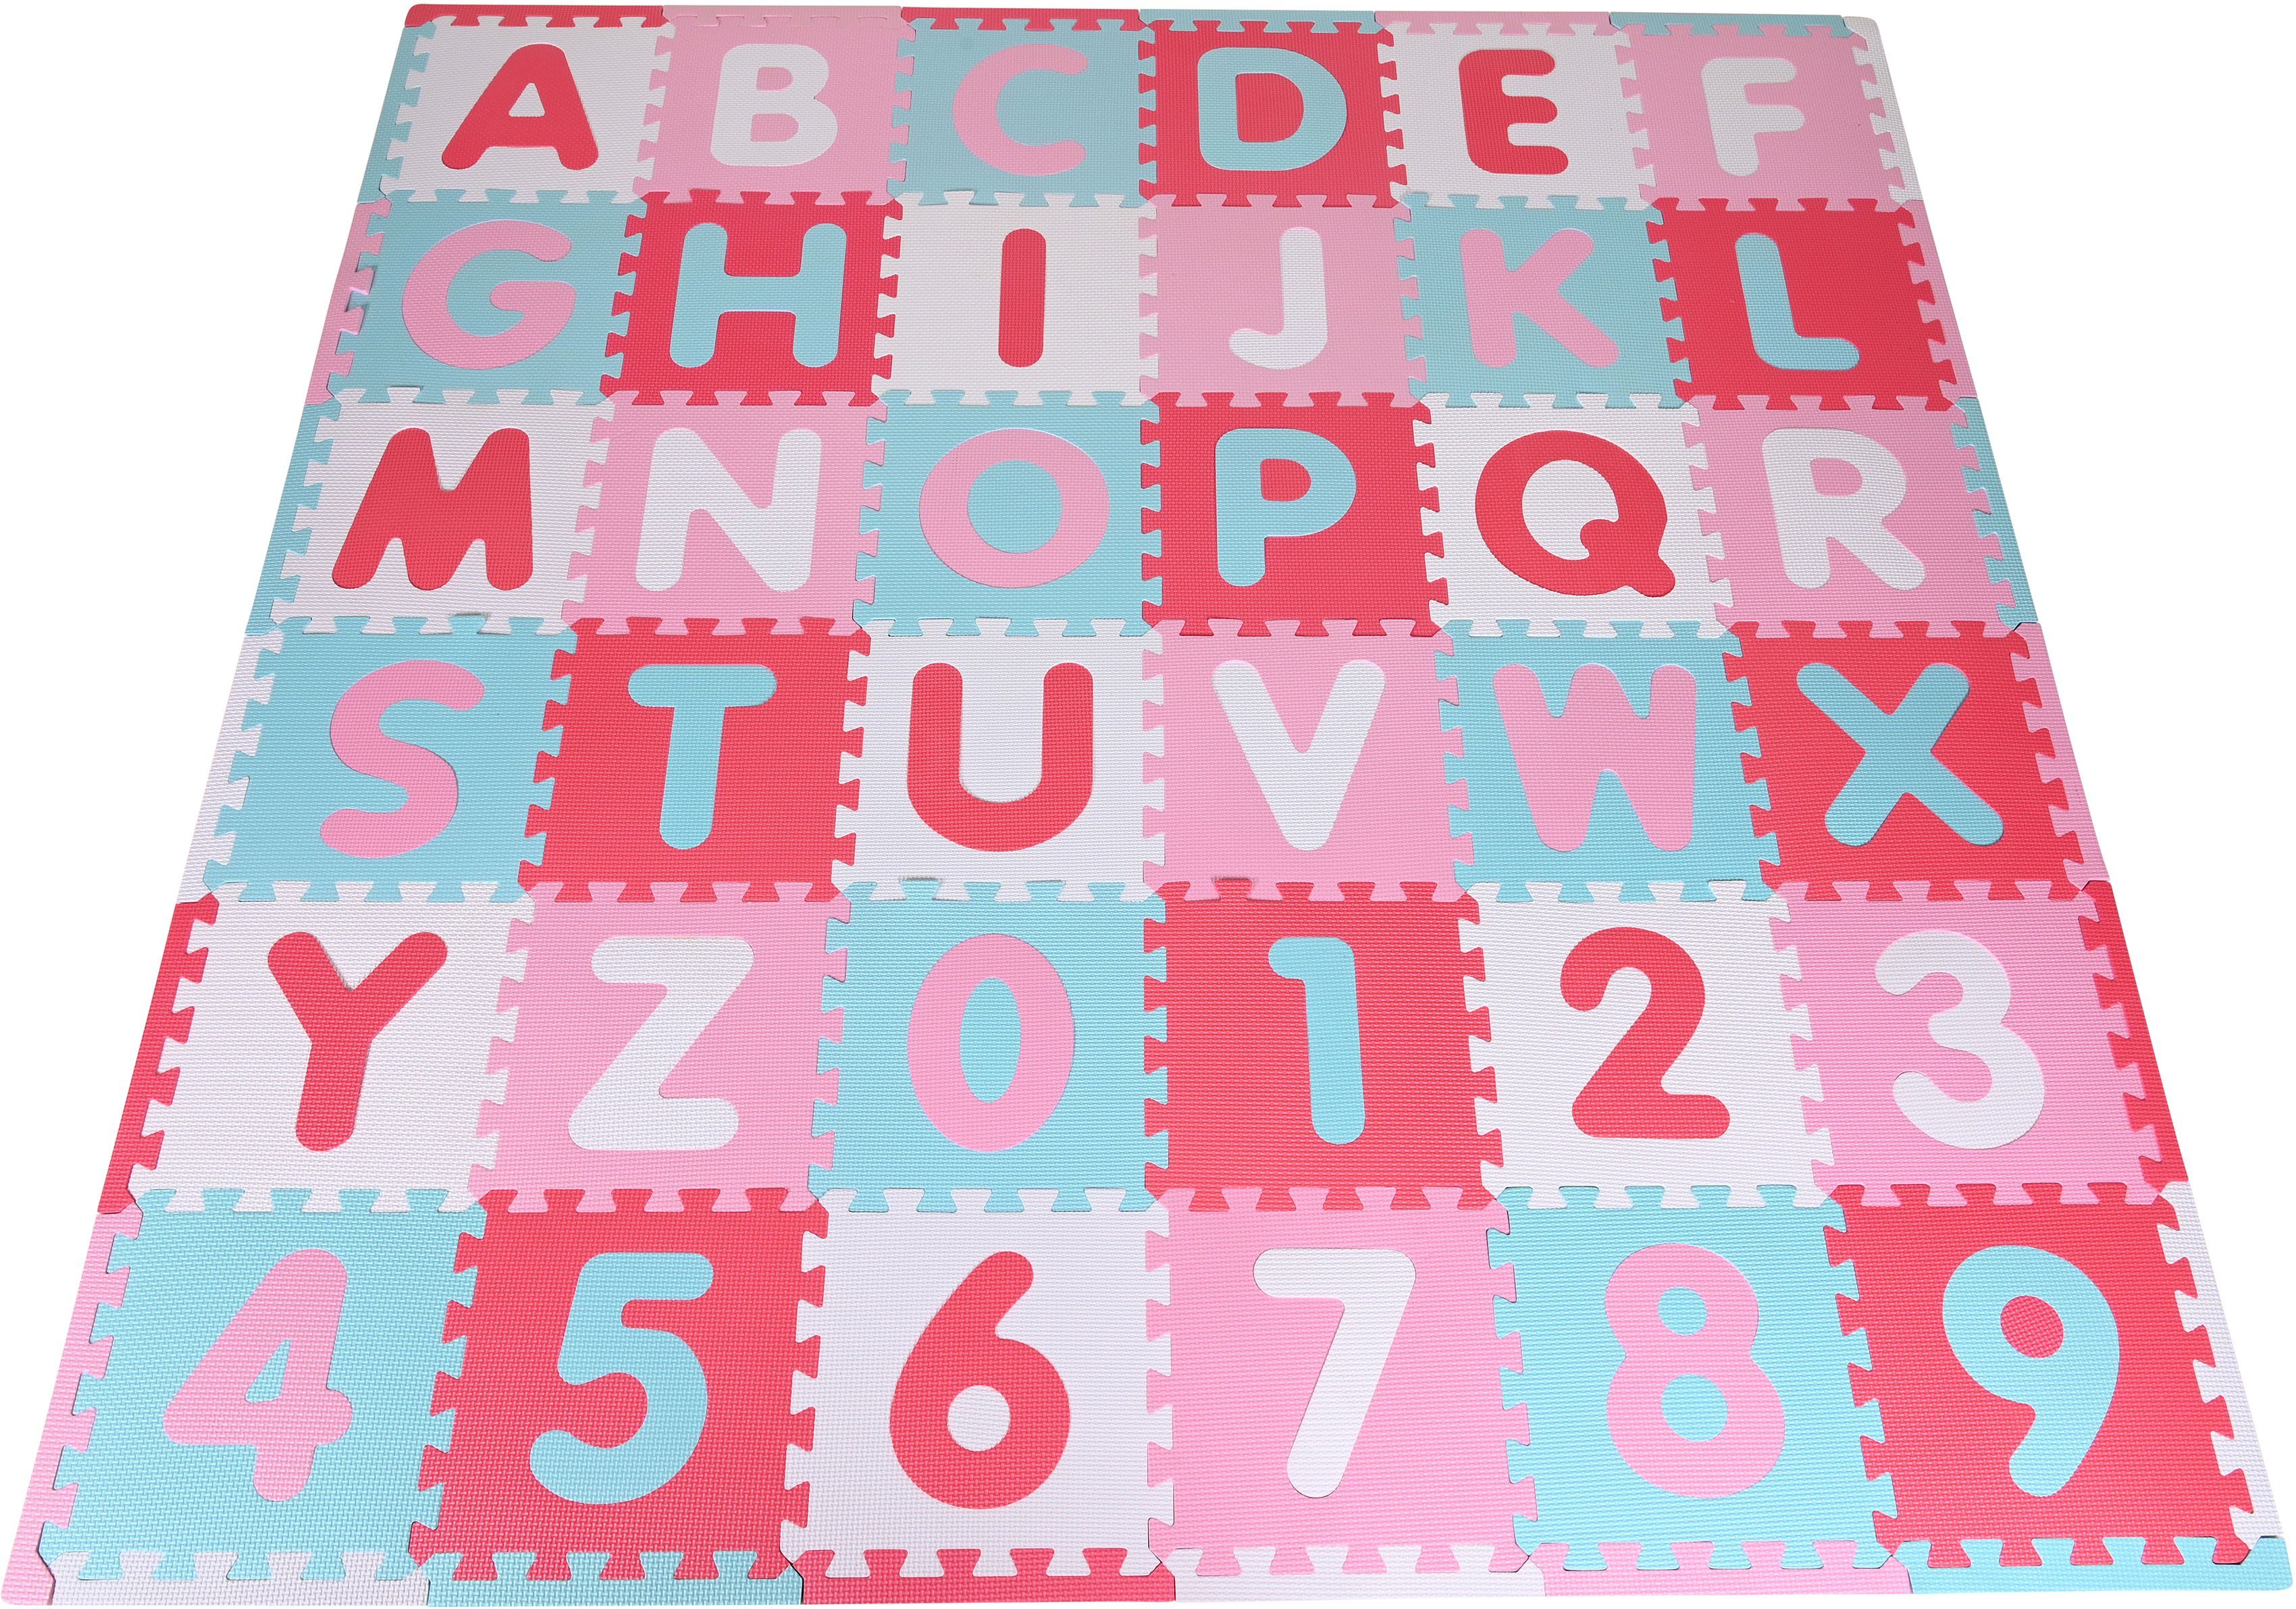 Knorrtoys® Puzzle Alphabet Bodenpuzzle Zahlen, Puzzleteile, Puzzlematte, Pink-rosa, 